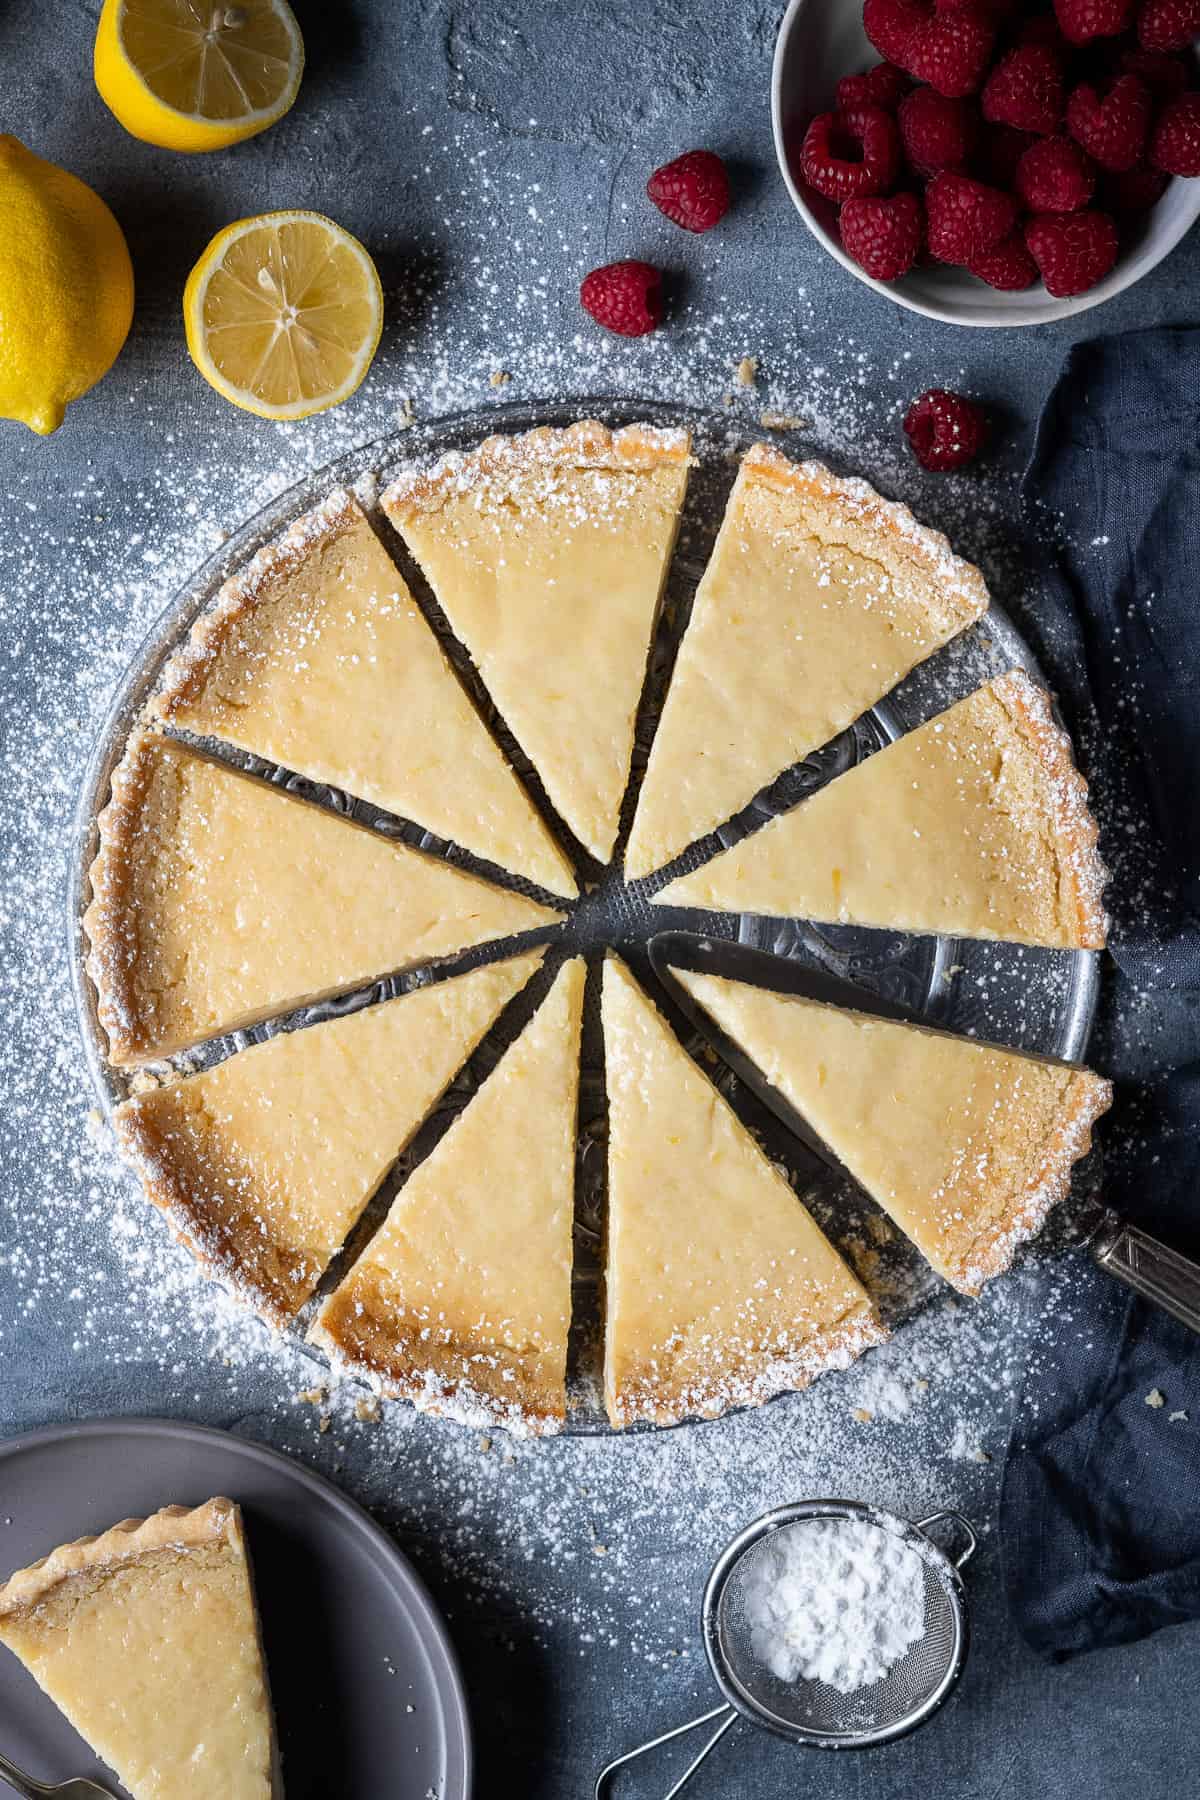 Sliced vegan lemon tart on a grey background with lemons and raspberries.